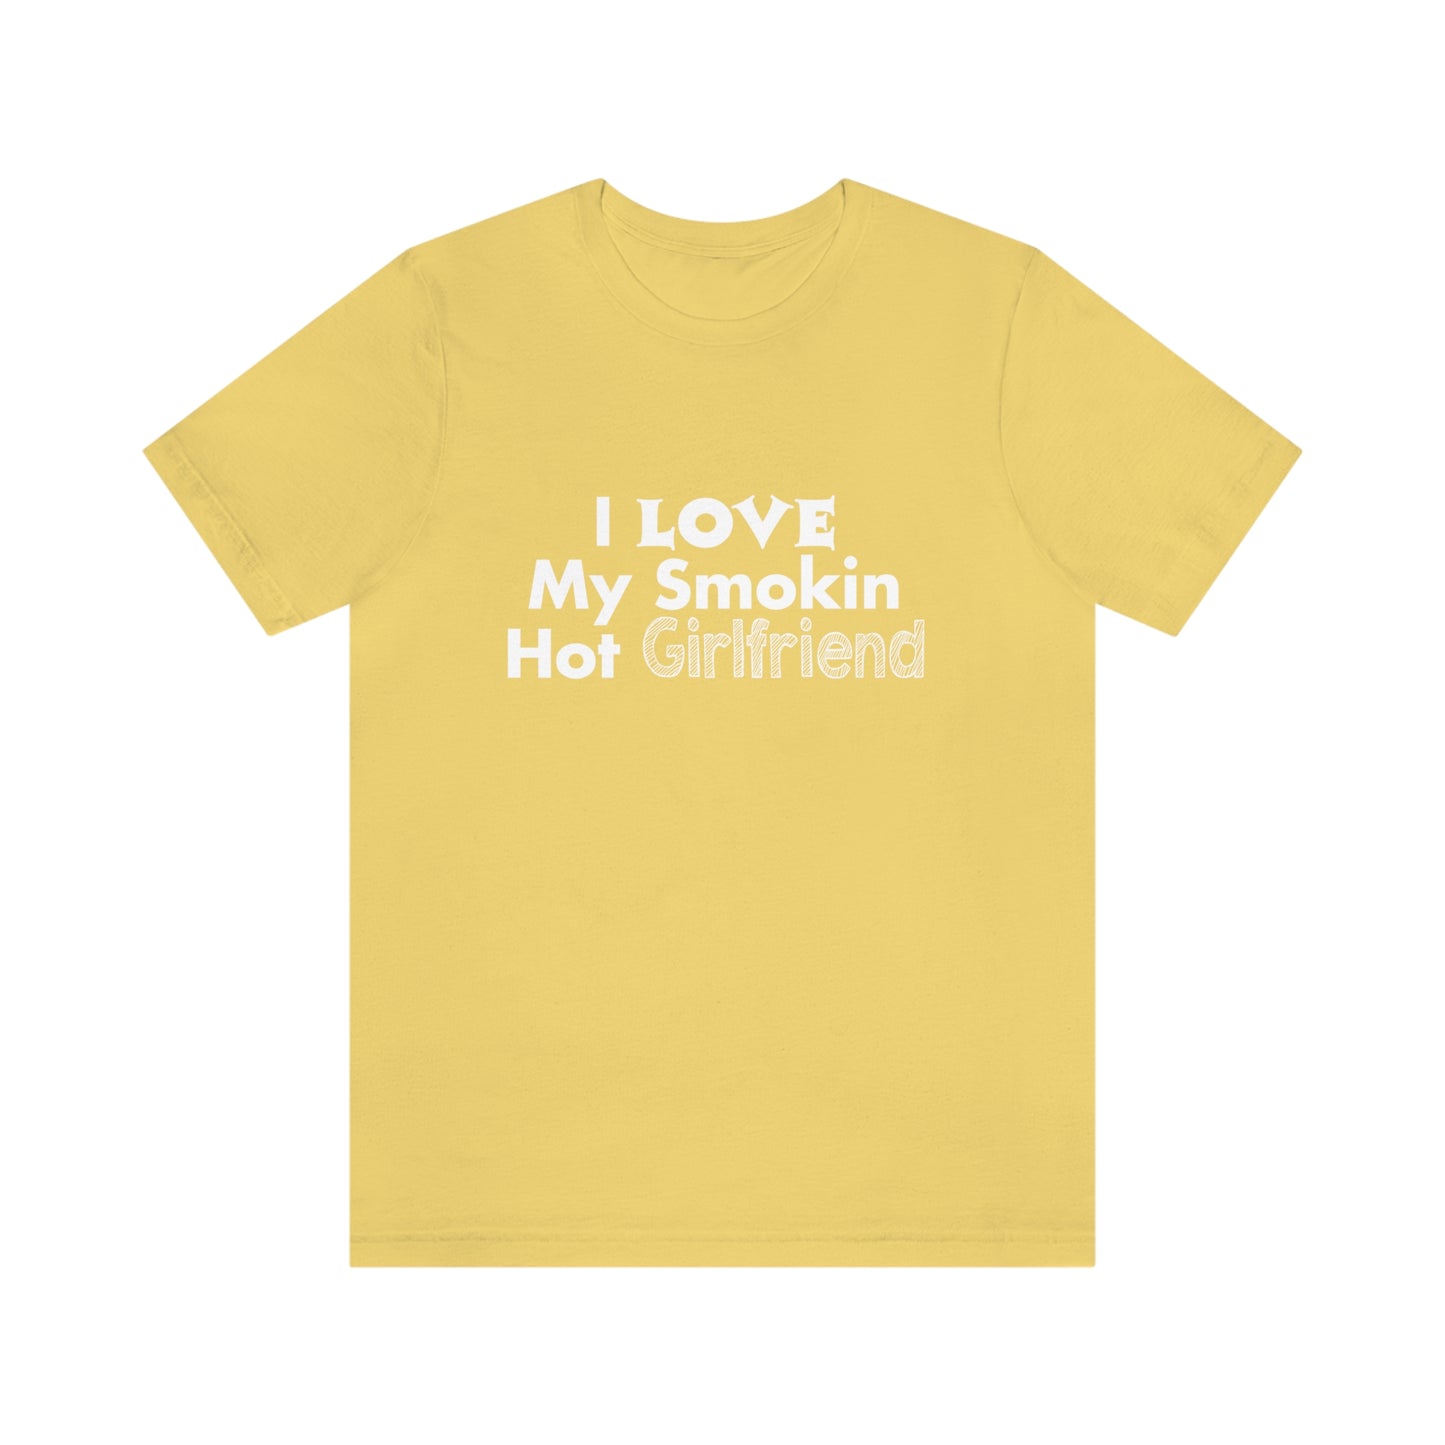 I Love My Smoking Hot Girlfriend - Unisex T-Shirt